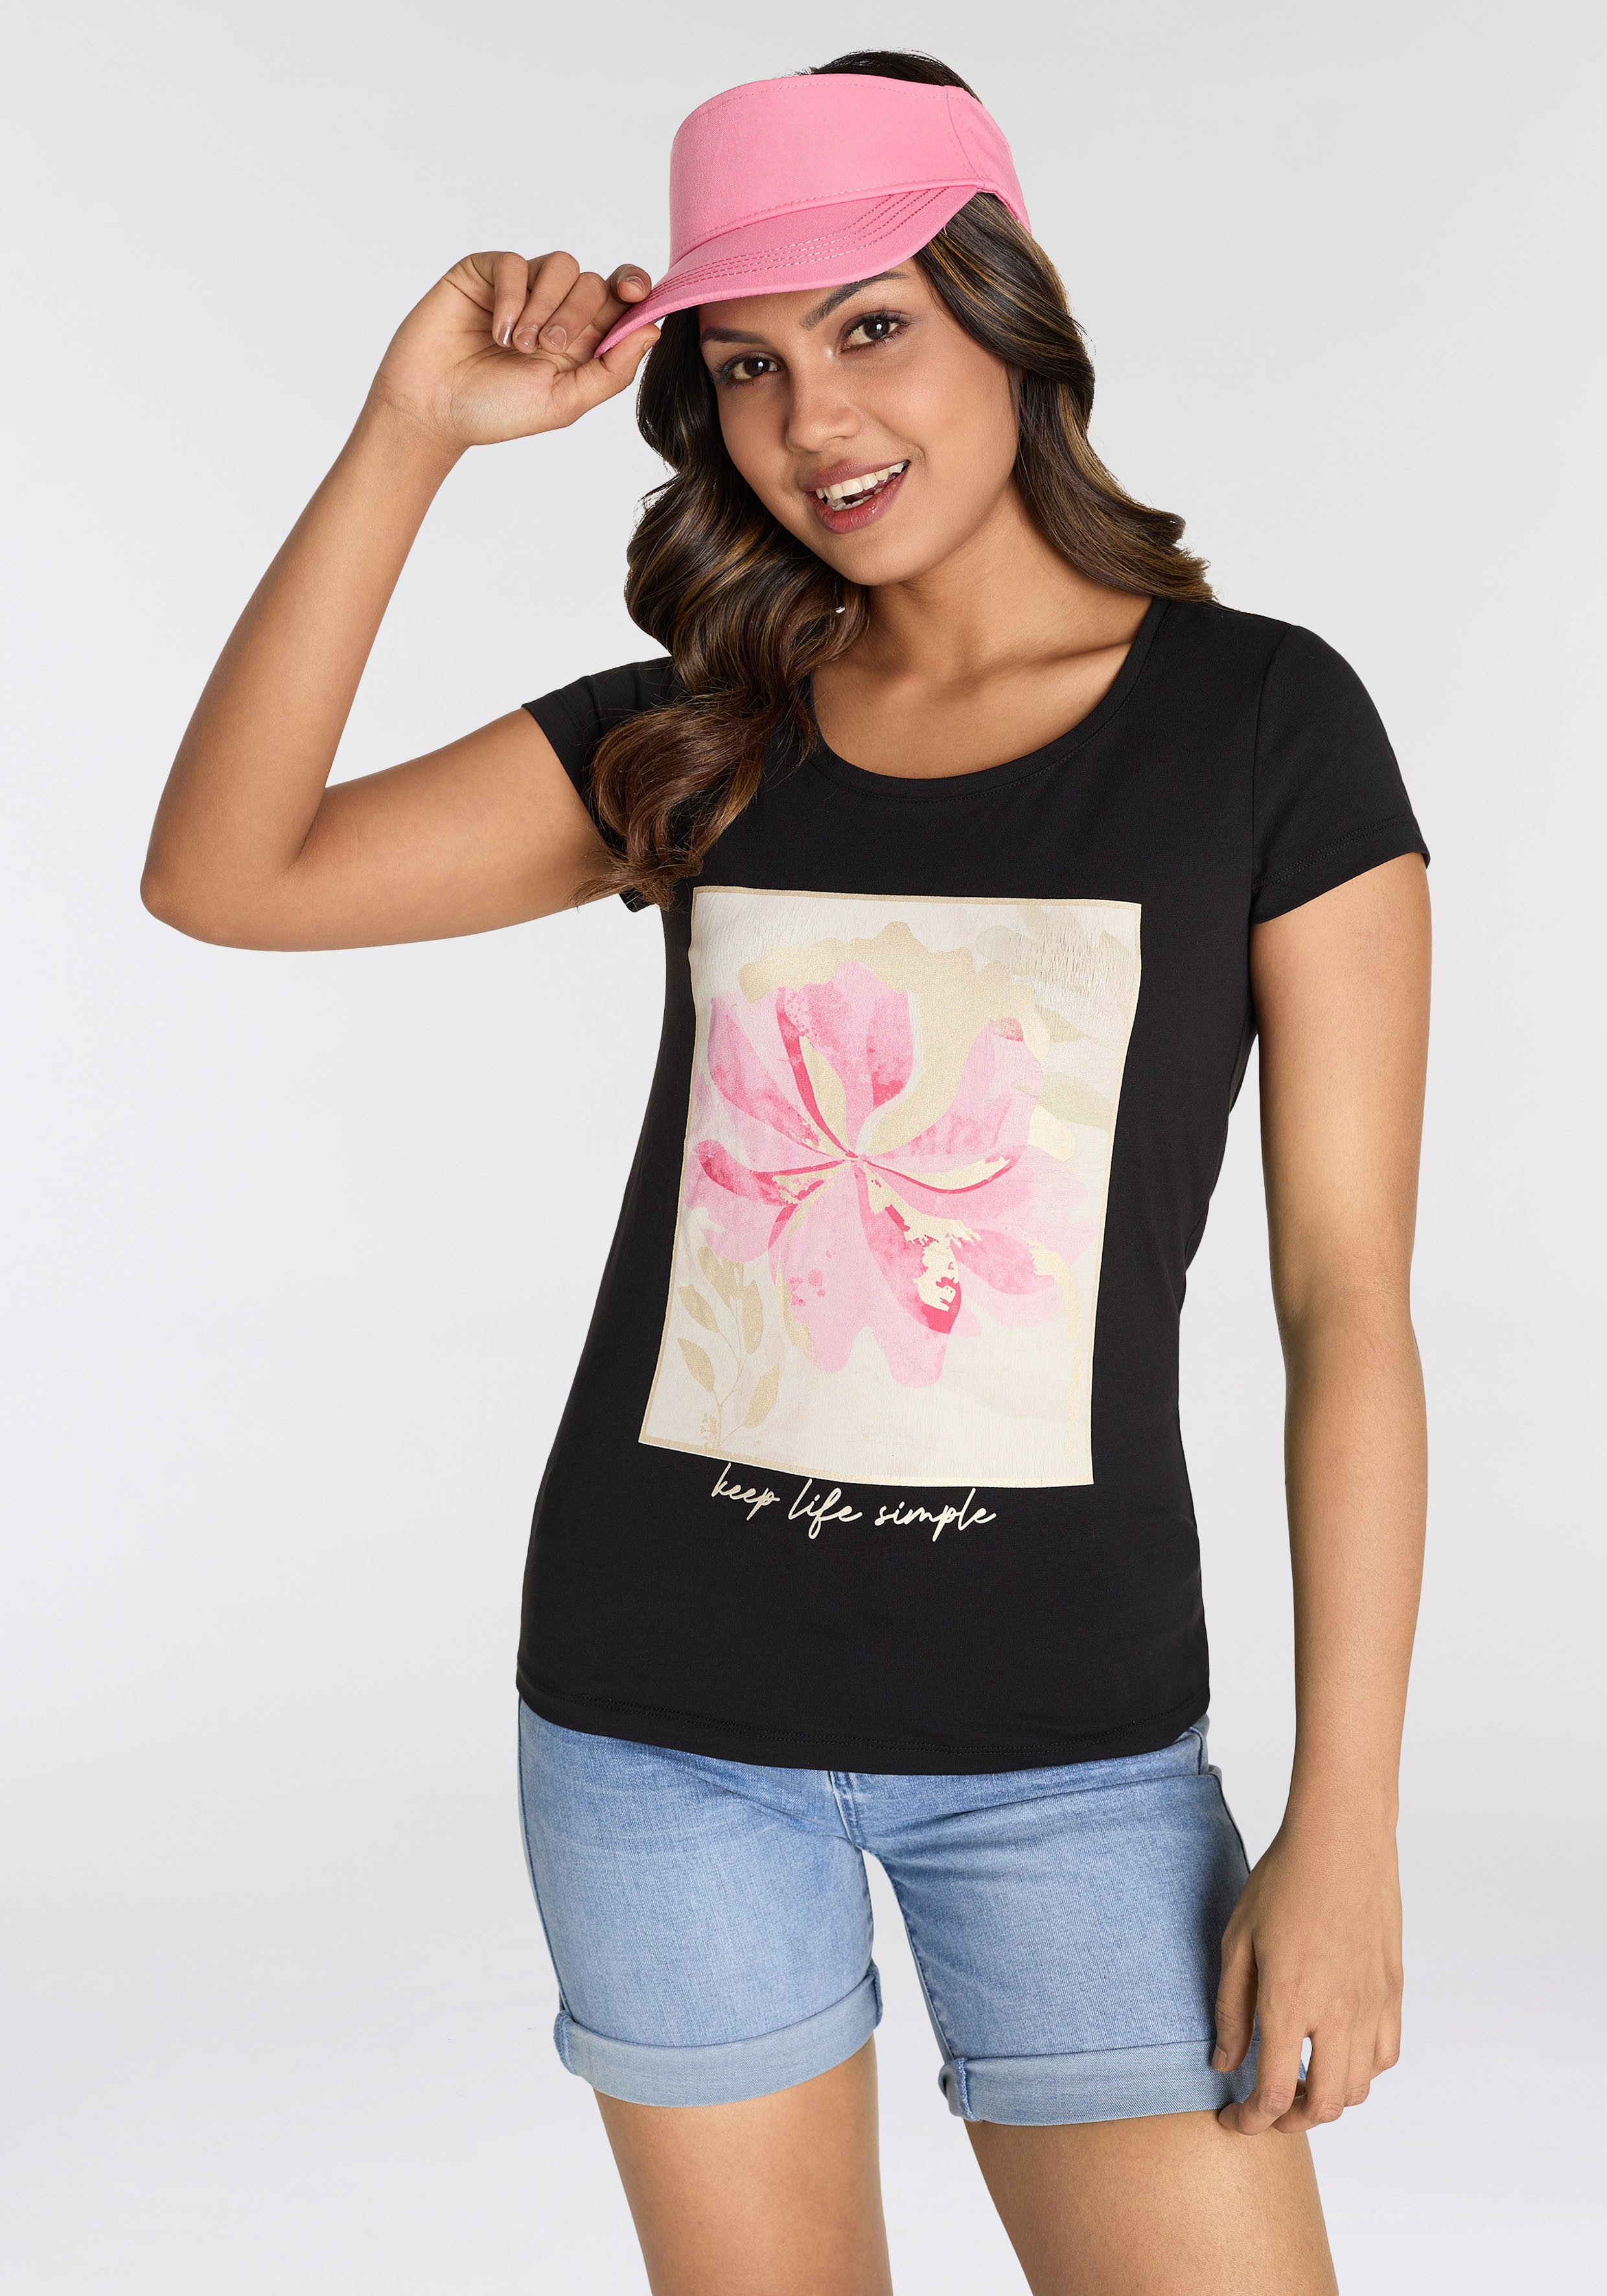 Laura Scott T-Shirt mit modischem Frontprint - NEUE KOLLEKTION